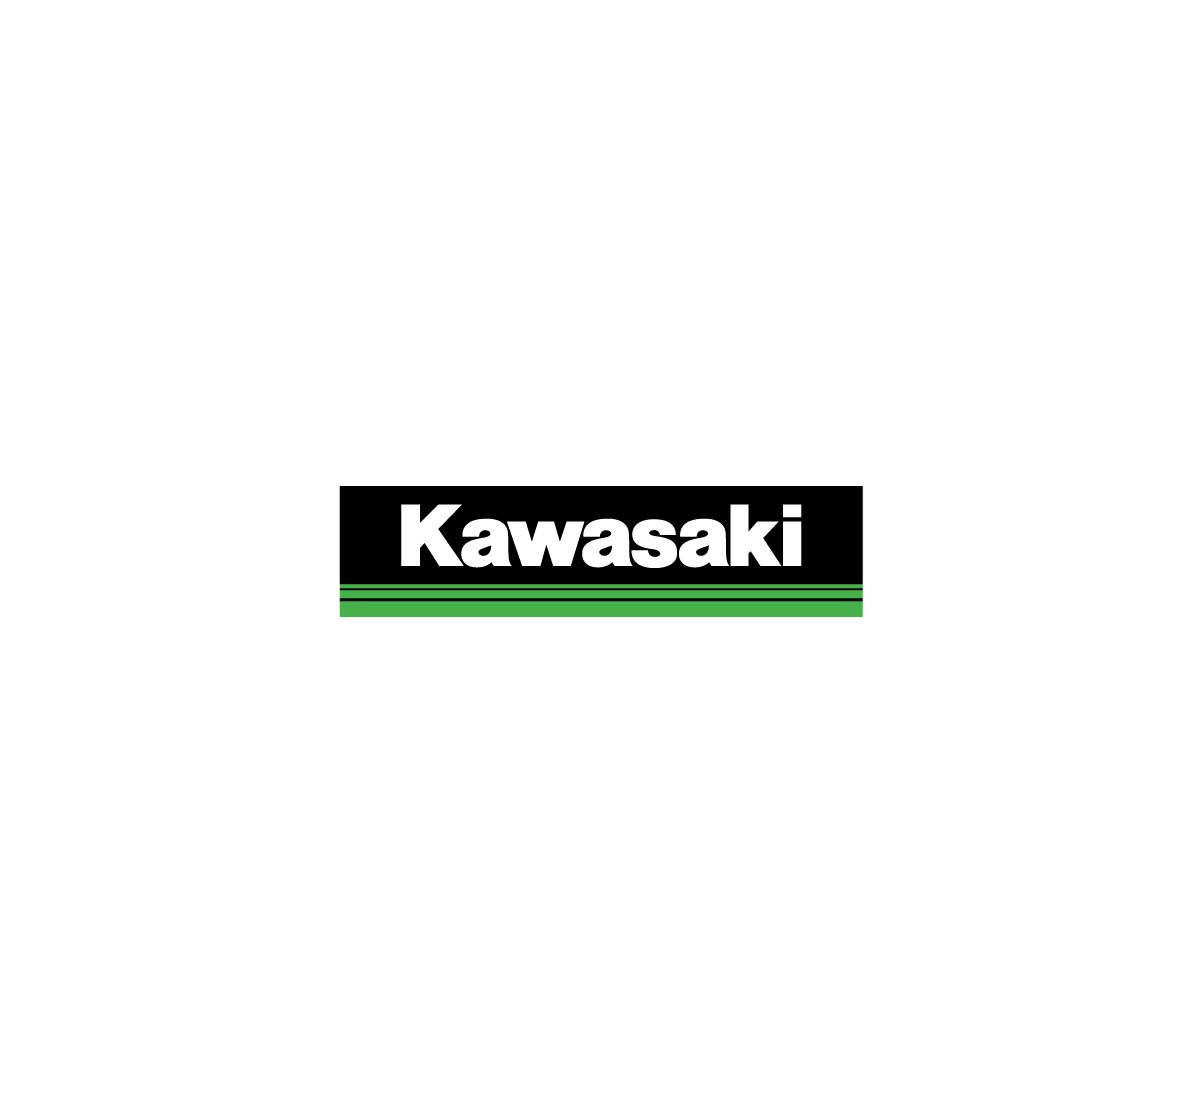 K068-9109-BKNS KAWASAKI 3 GREEN LINES LANYARD 